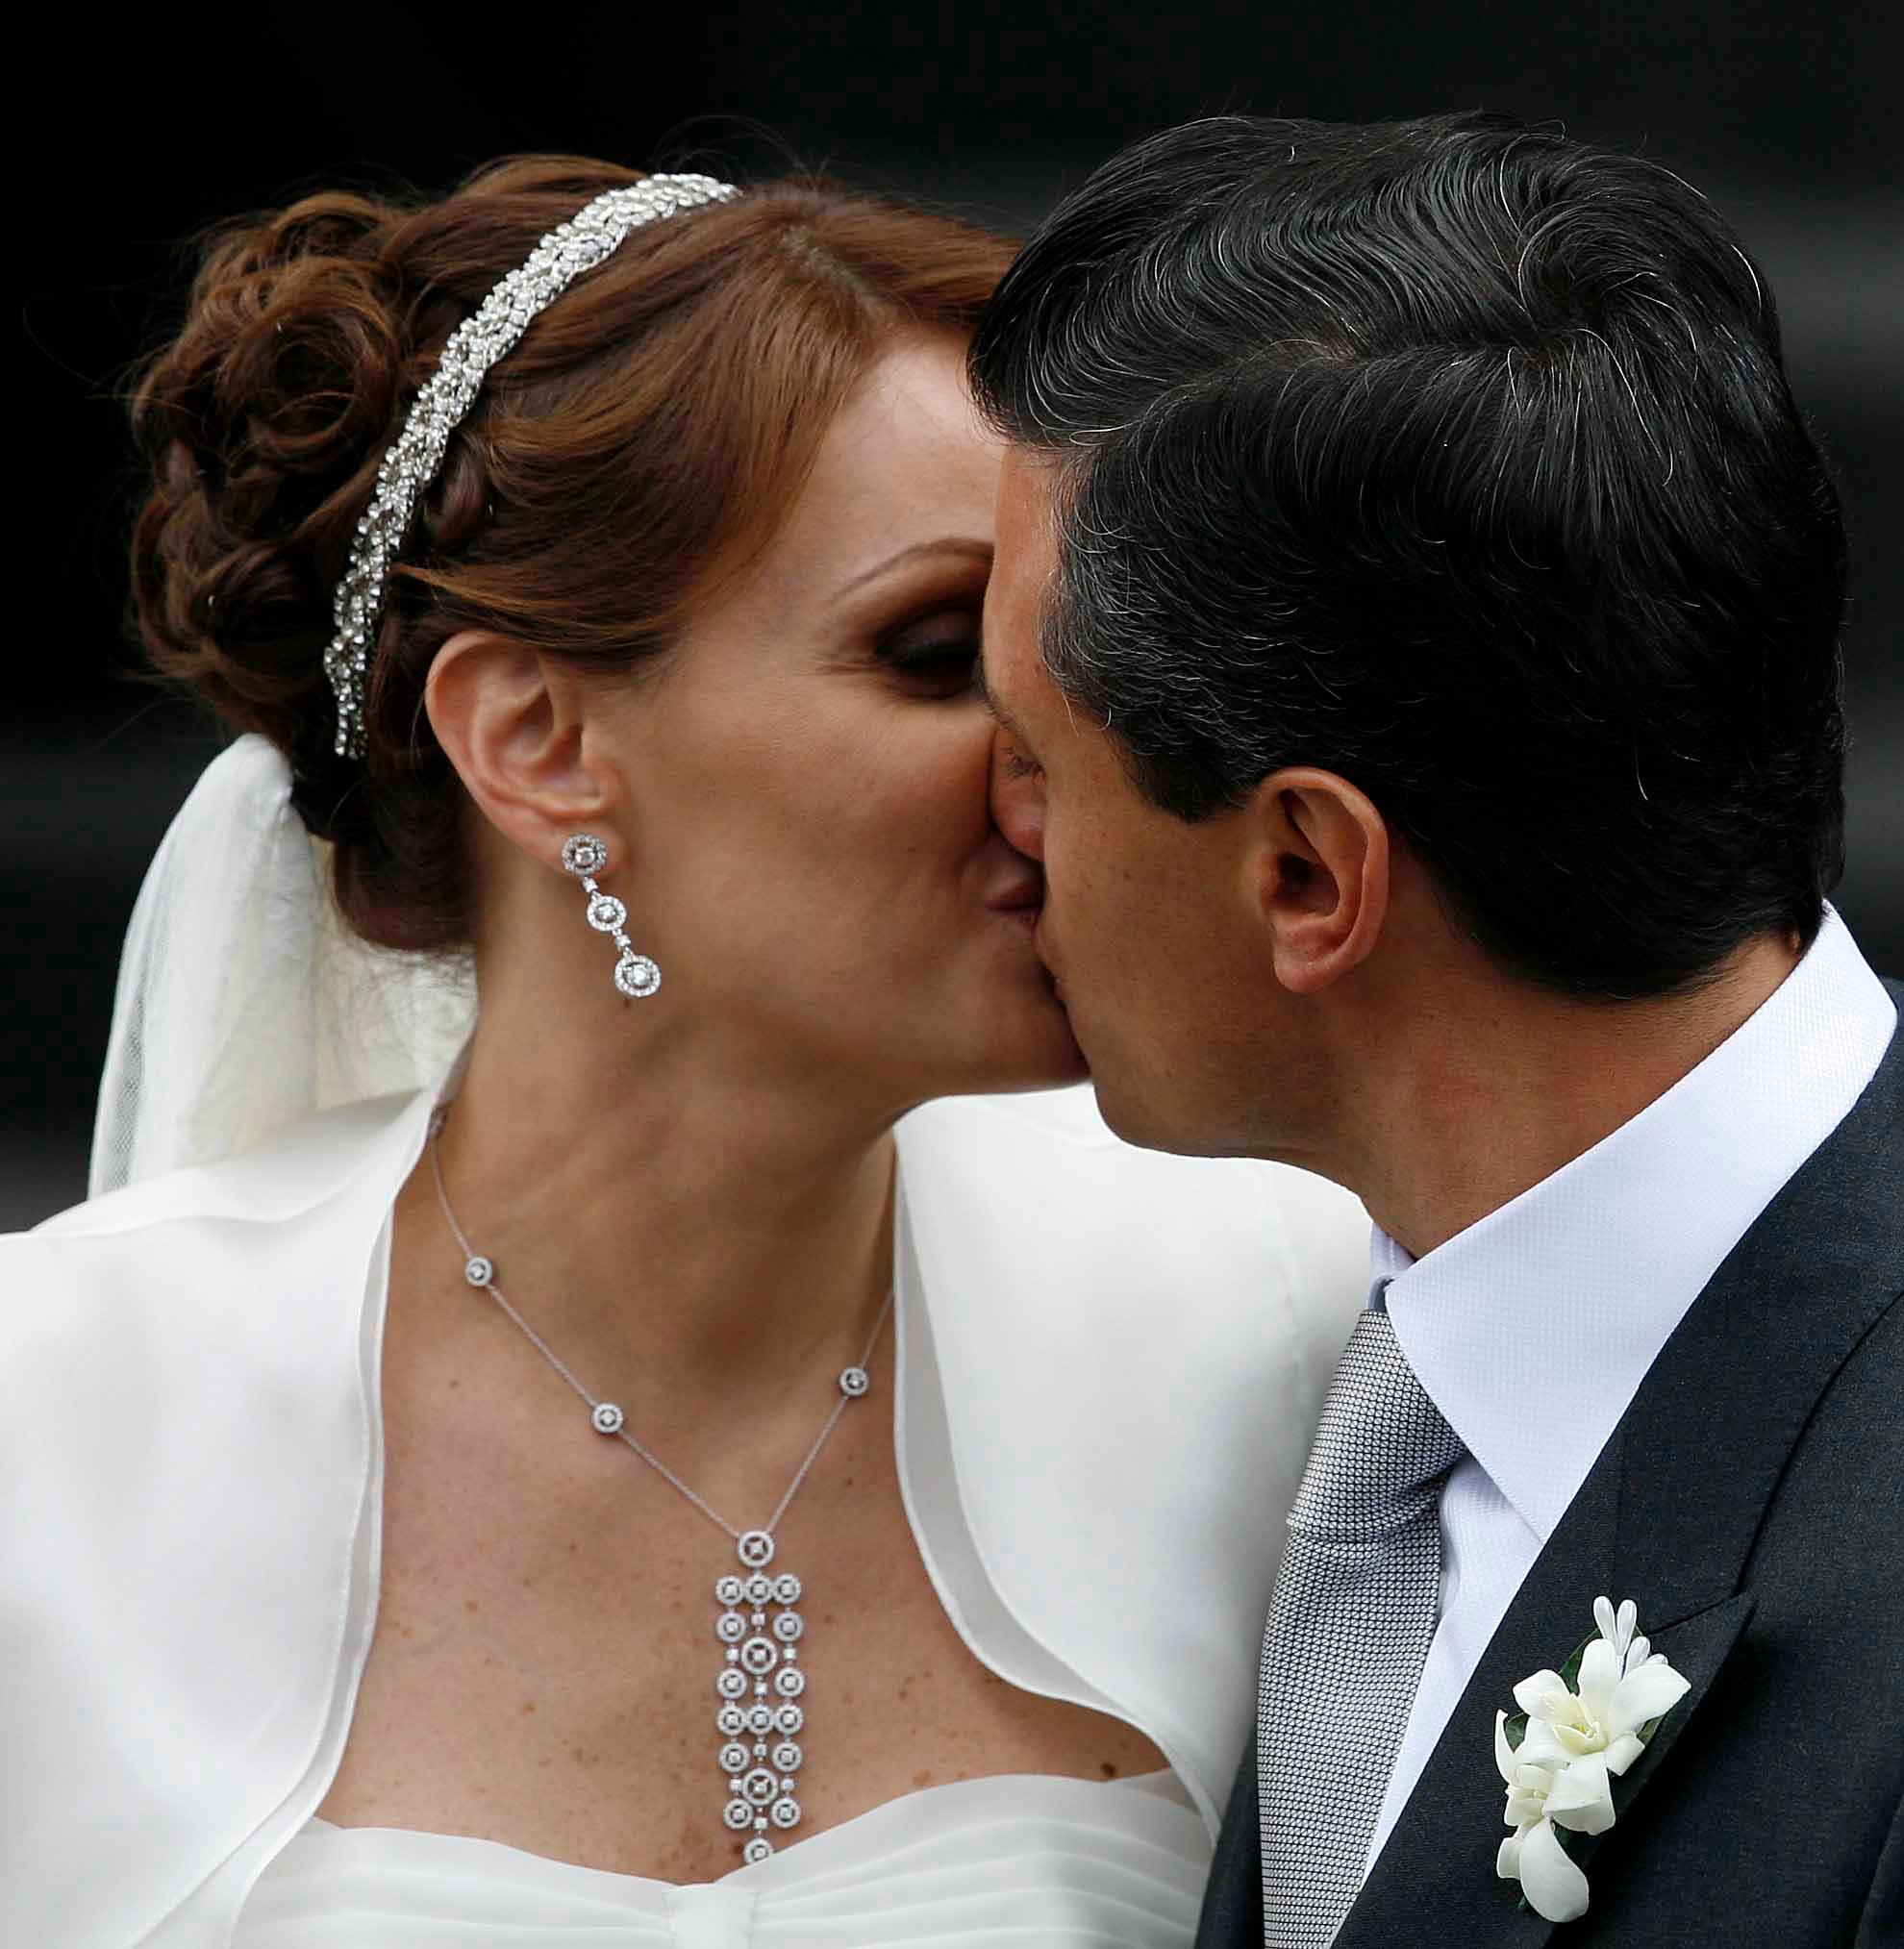 La boda de Peña Nieto en imágenes